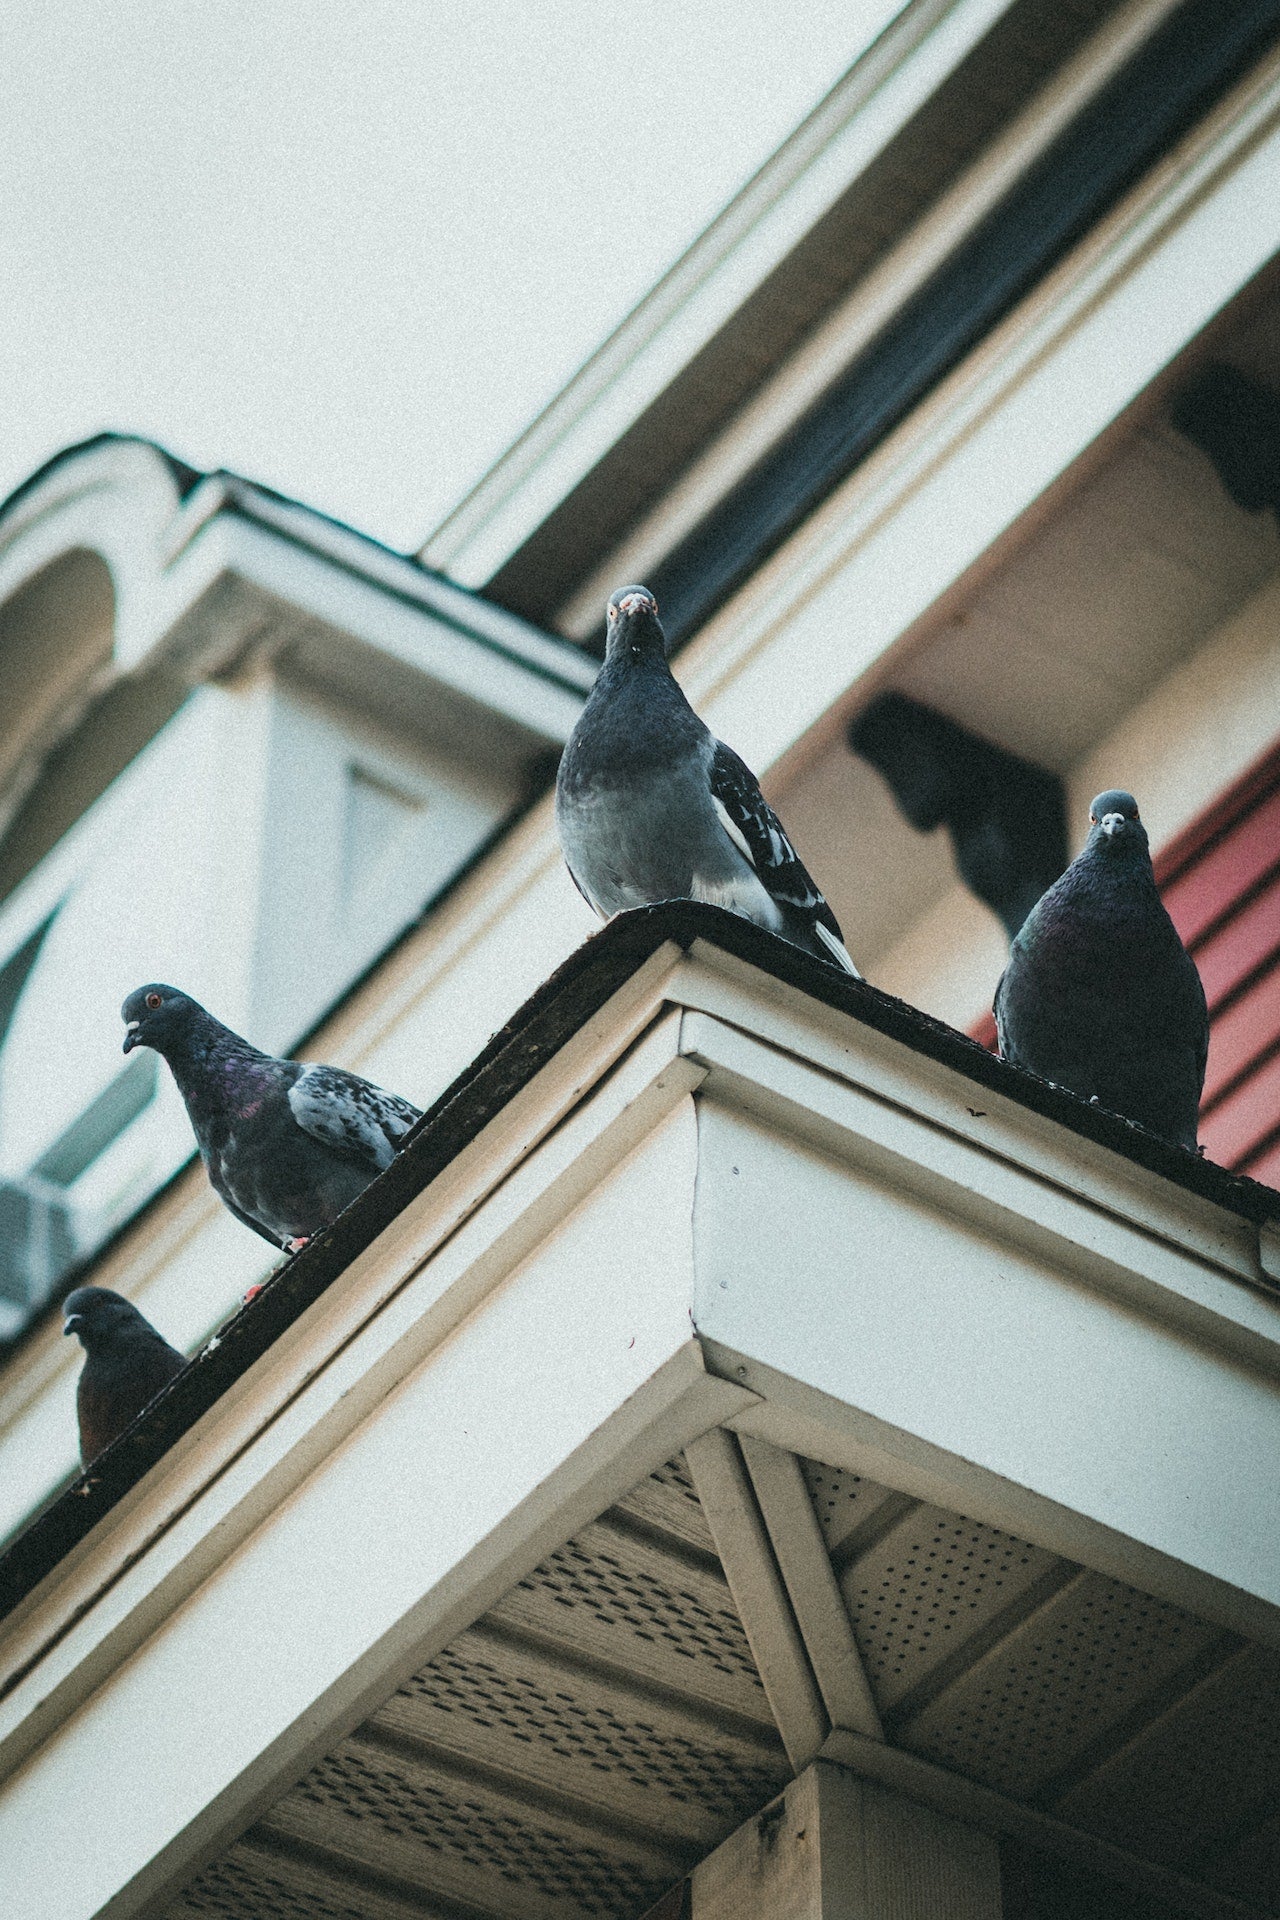 Anti-pigeon balcon : comment éloigner les oiseaux ?